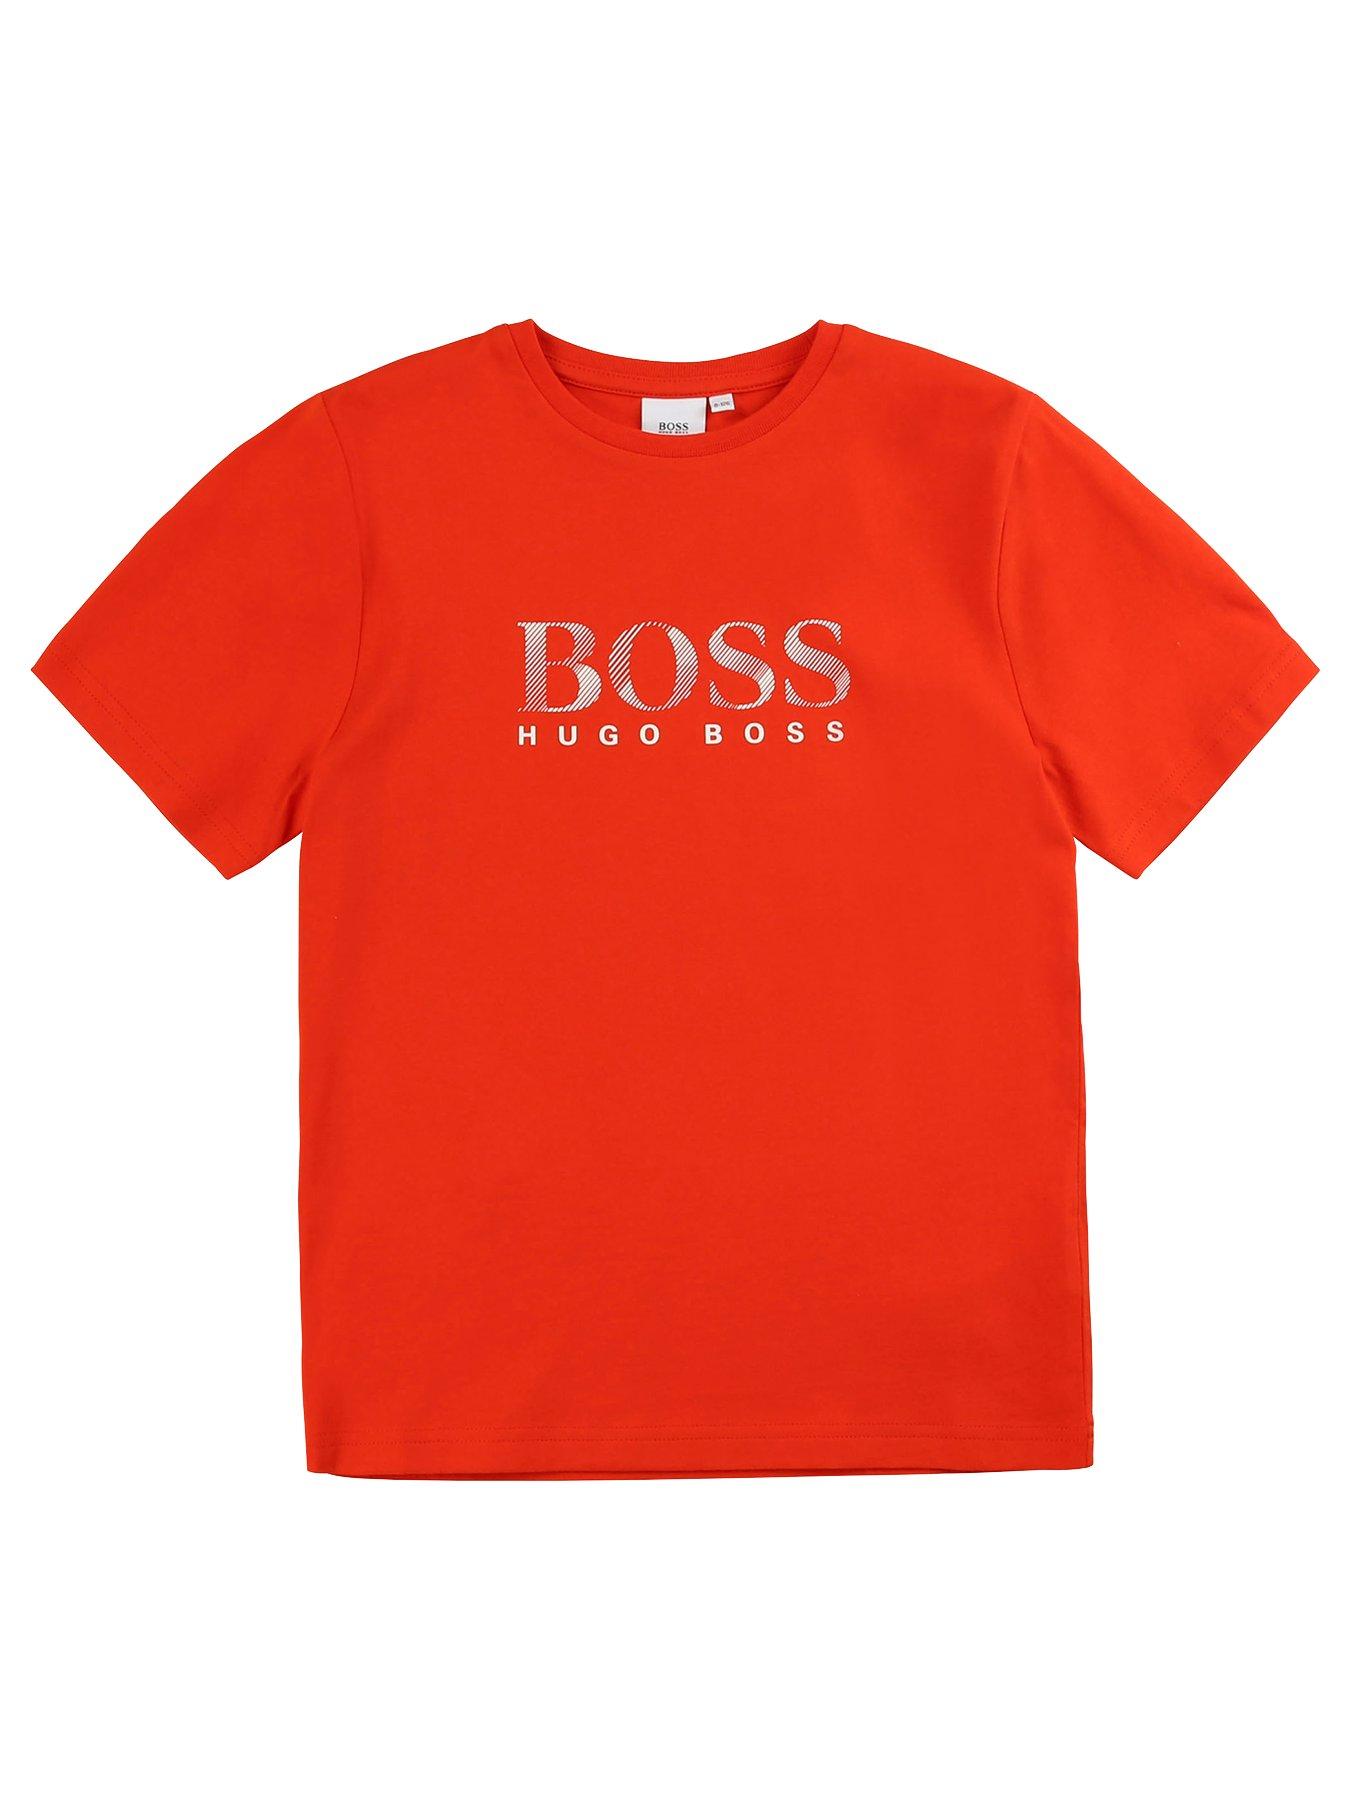 boss tshirt boys